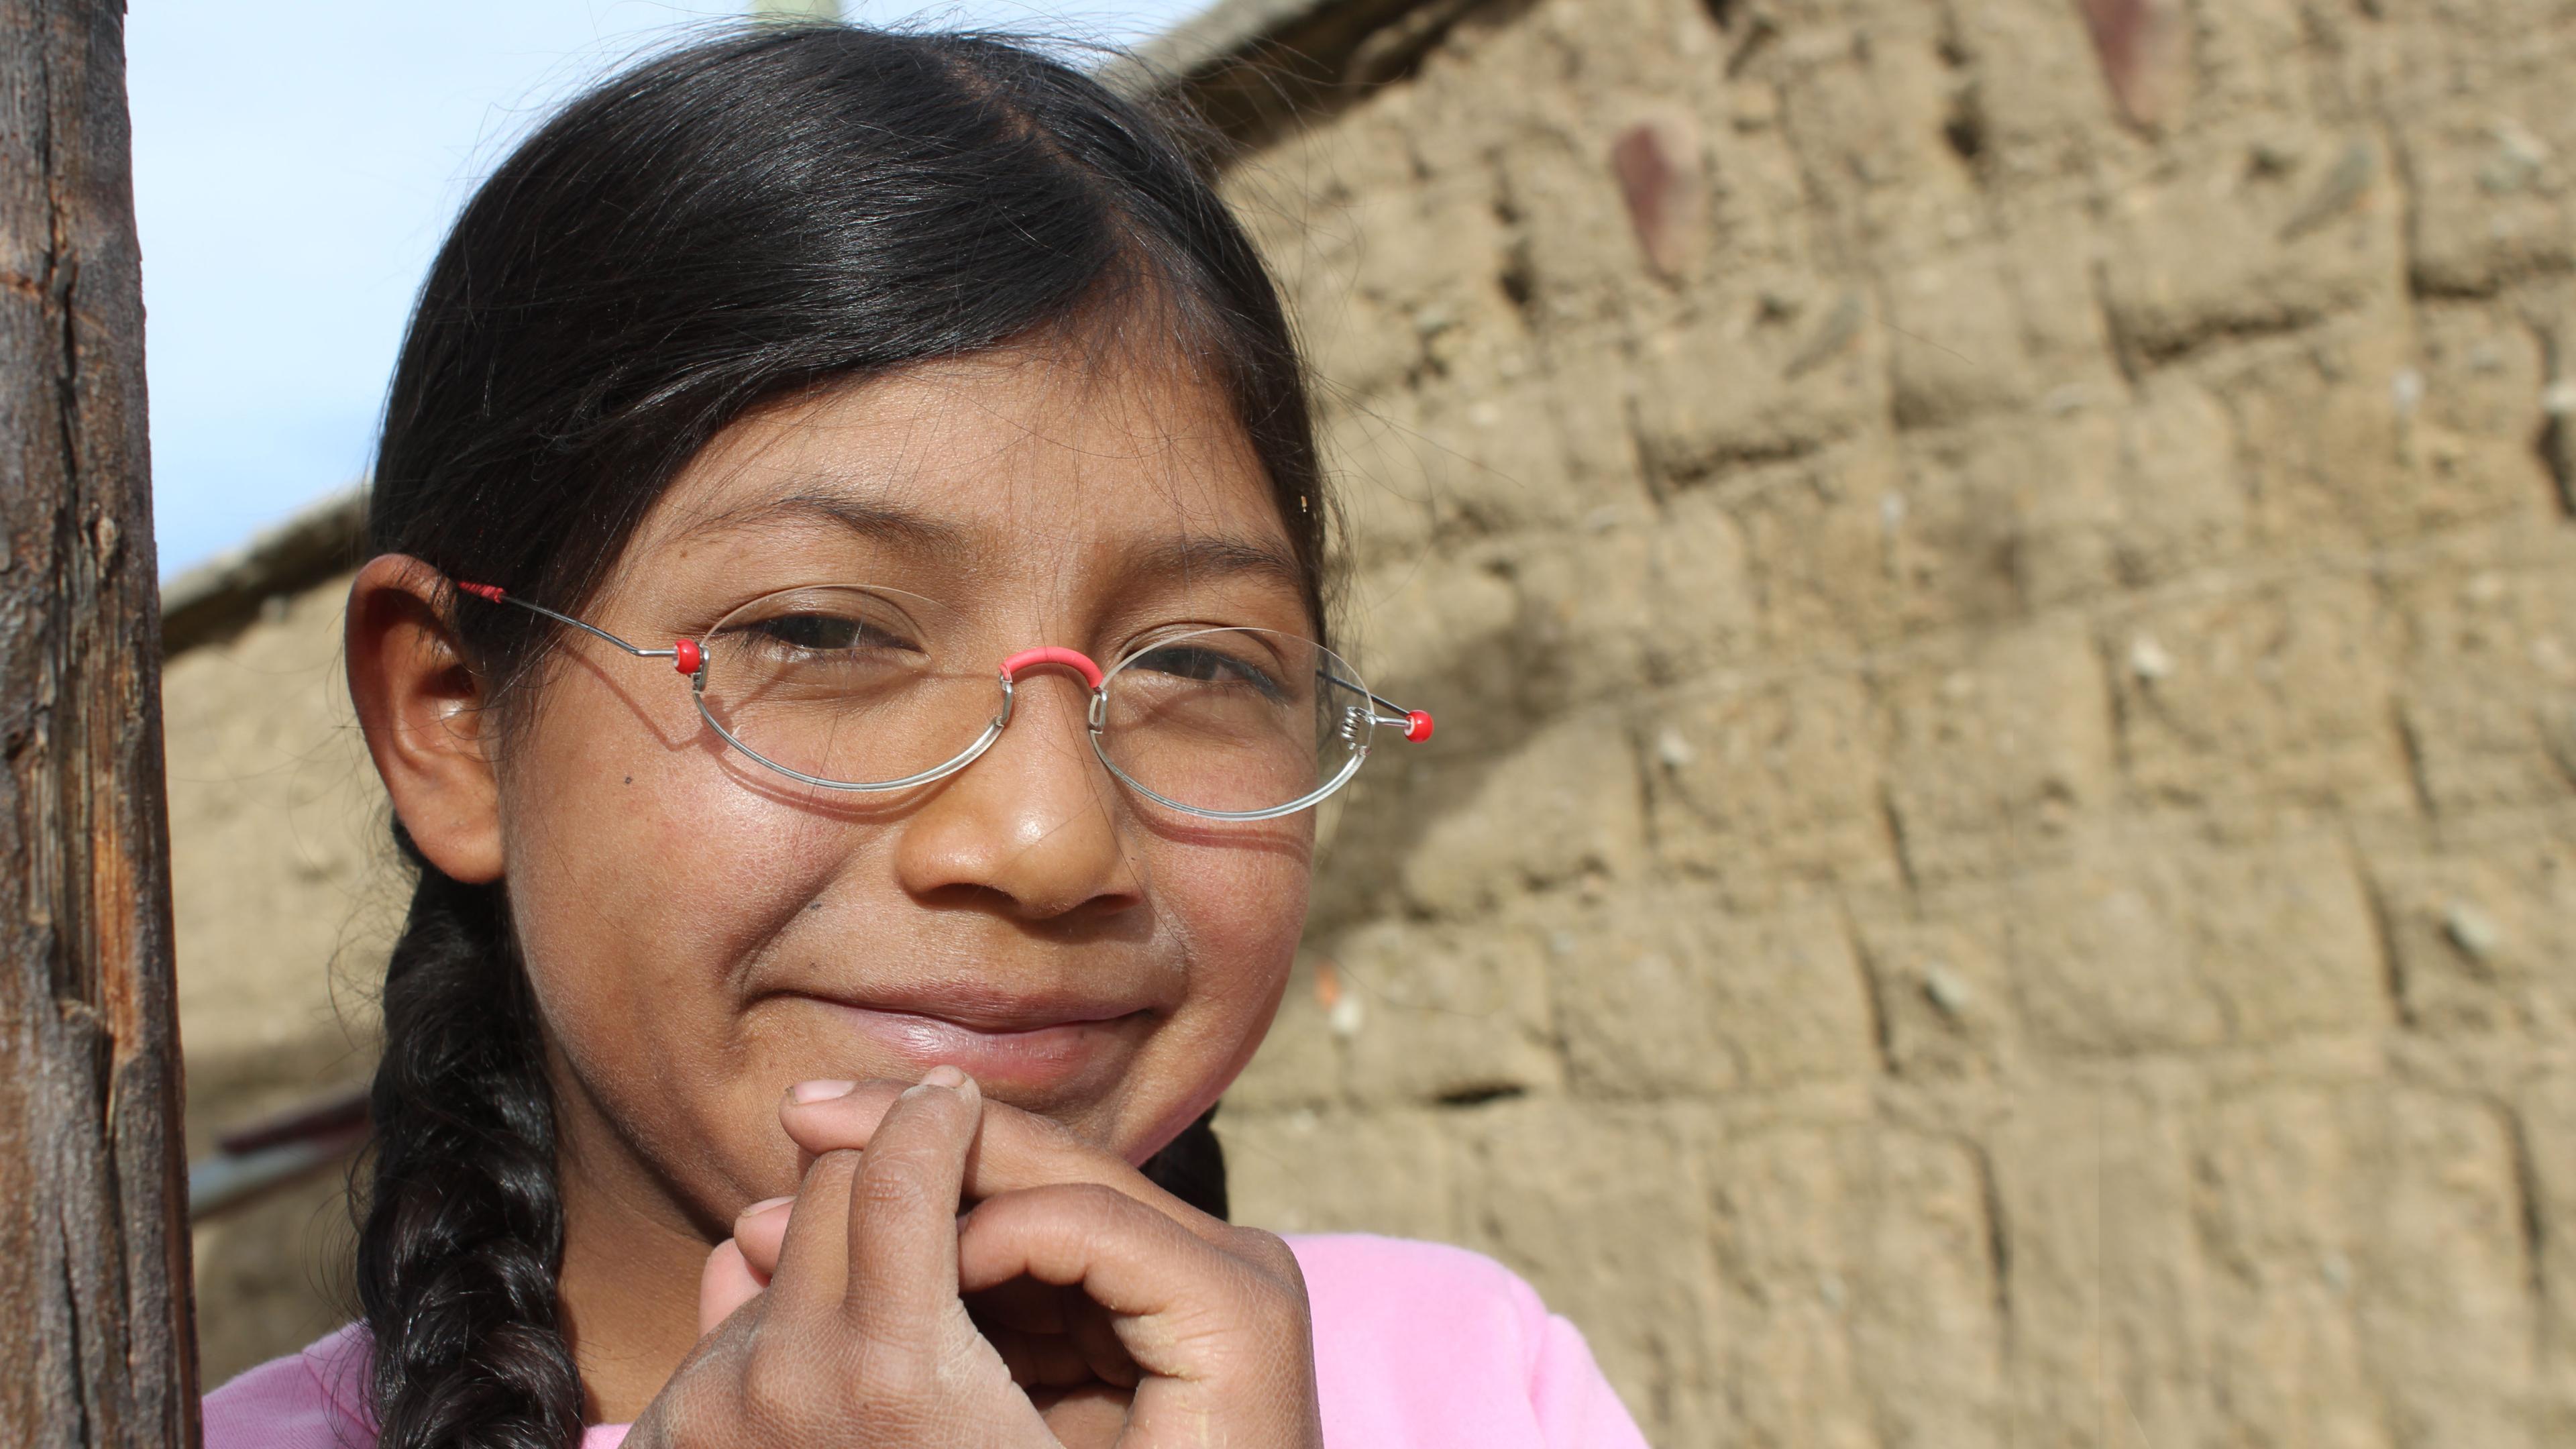 Mädchen aus Bolivien mit EinDollarBrille, grinst und hält sich die gefalteten Hände ans Kinn